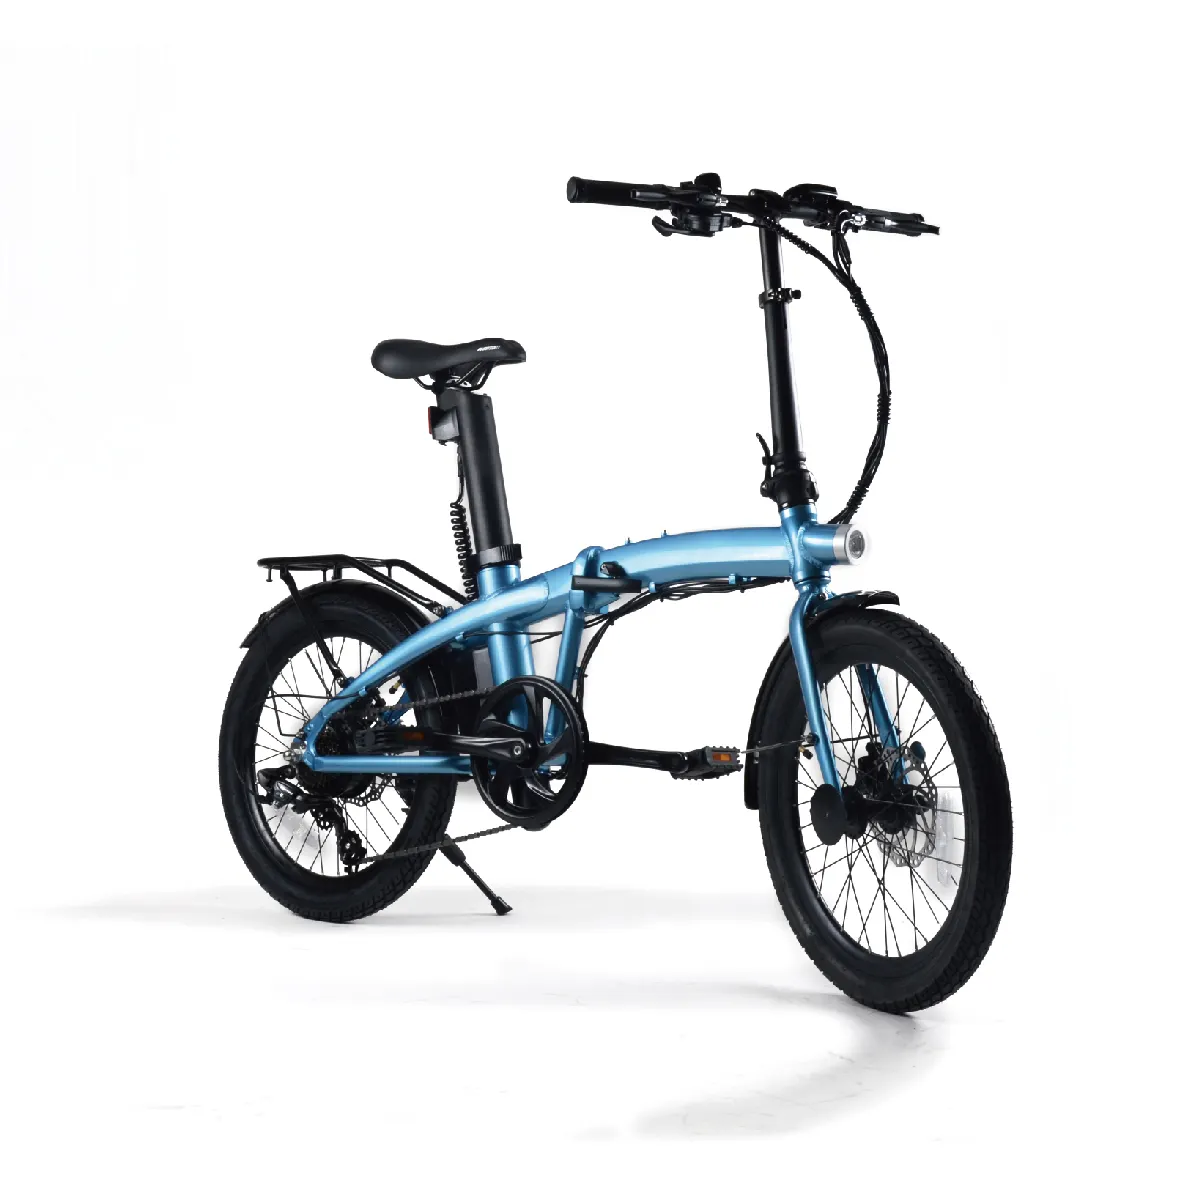 Bicicleta eléctrica plegable de Ciudad de 20 pulgadas, bicicleta eléctrica plegable de 25 km/h o 32 km/h para adultos y adolescentes